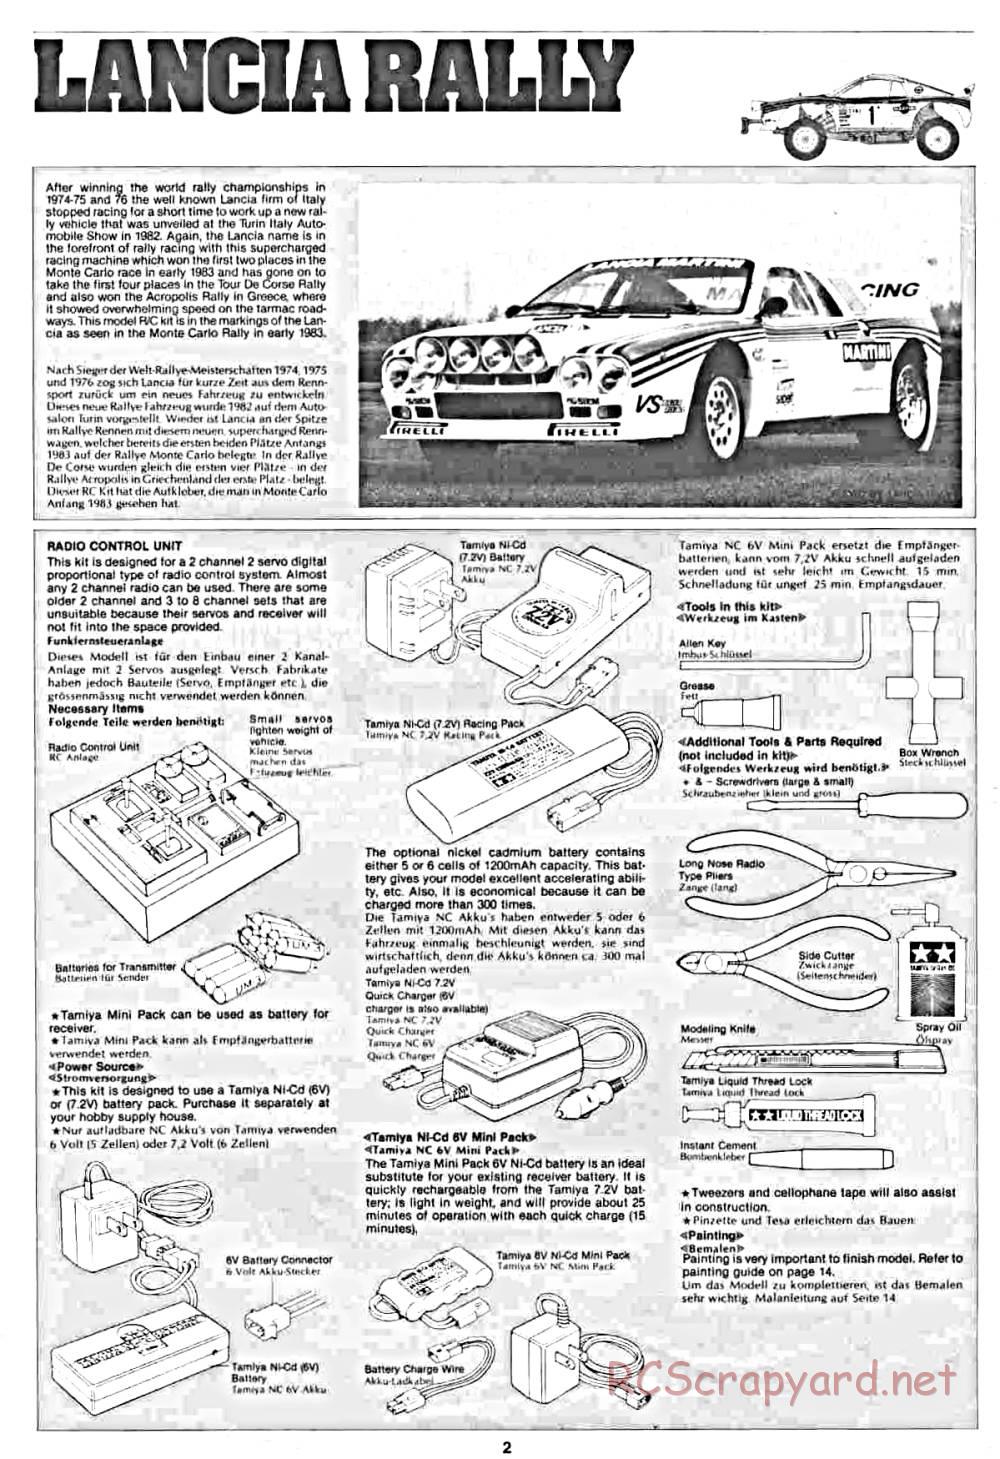 Tamiya - Lancia Rally - 58040 - Manual - Page 2